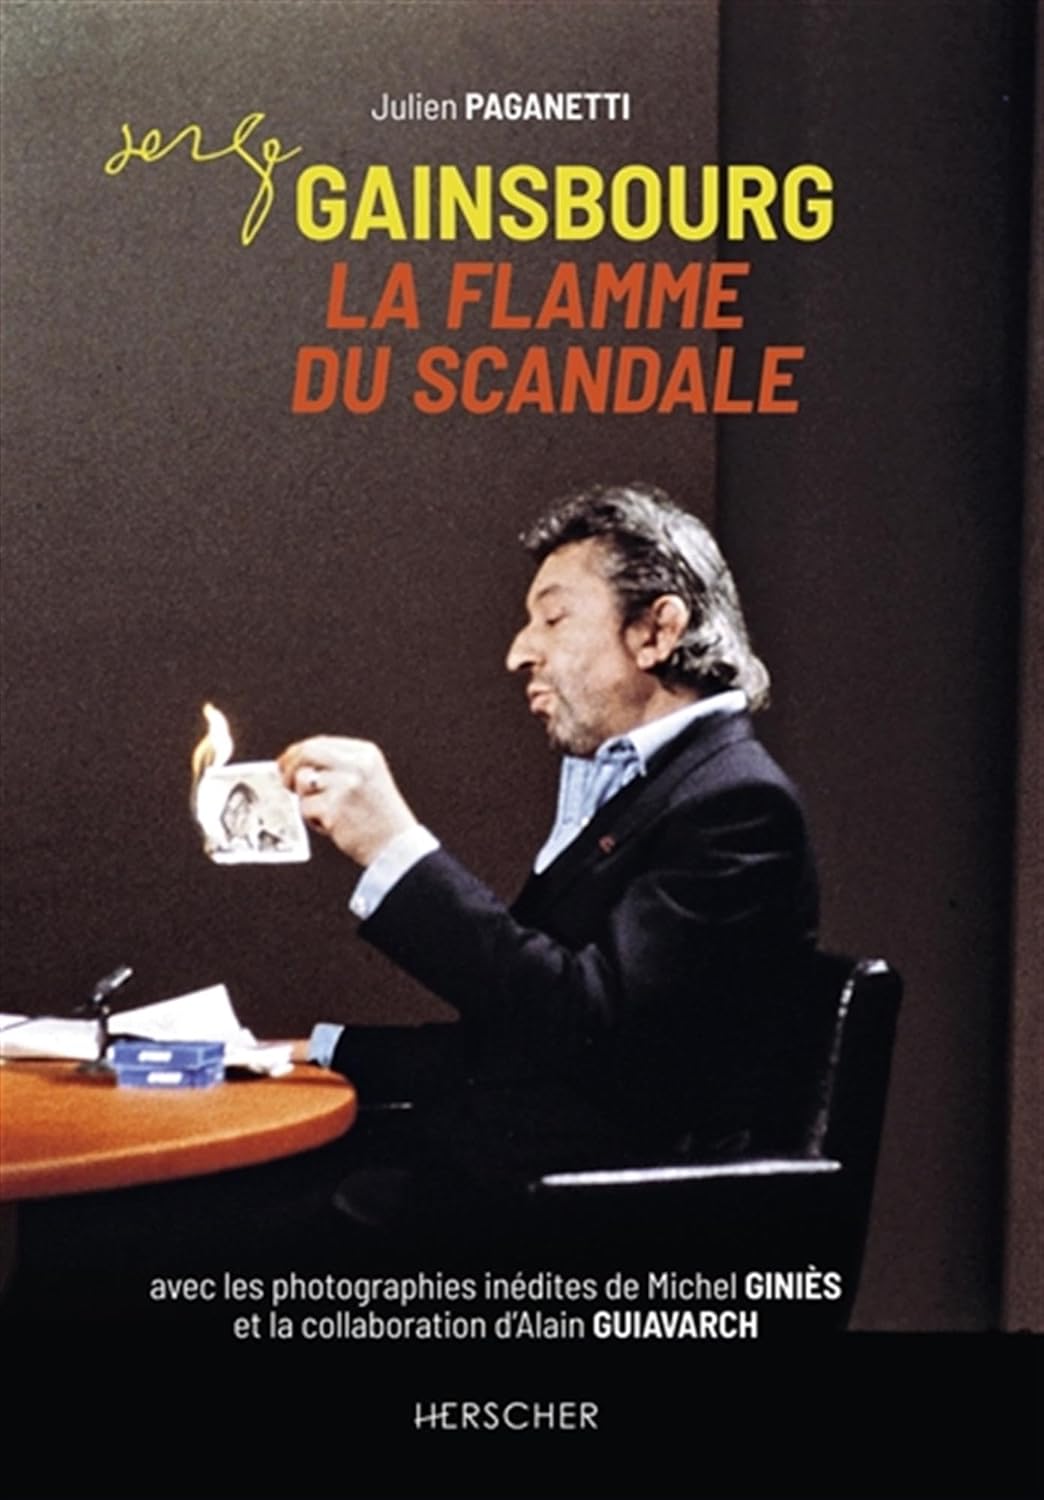 Serge Gainsbourg, la Flamme du scandale - Julien Paganetti (Auteur) - Livres FNAC